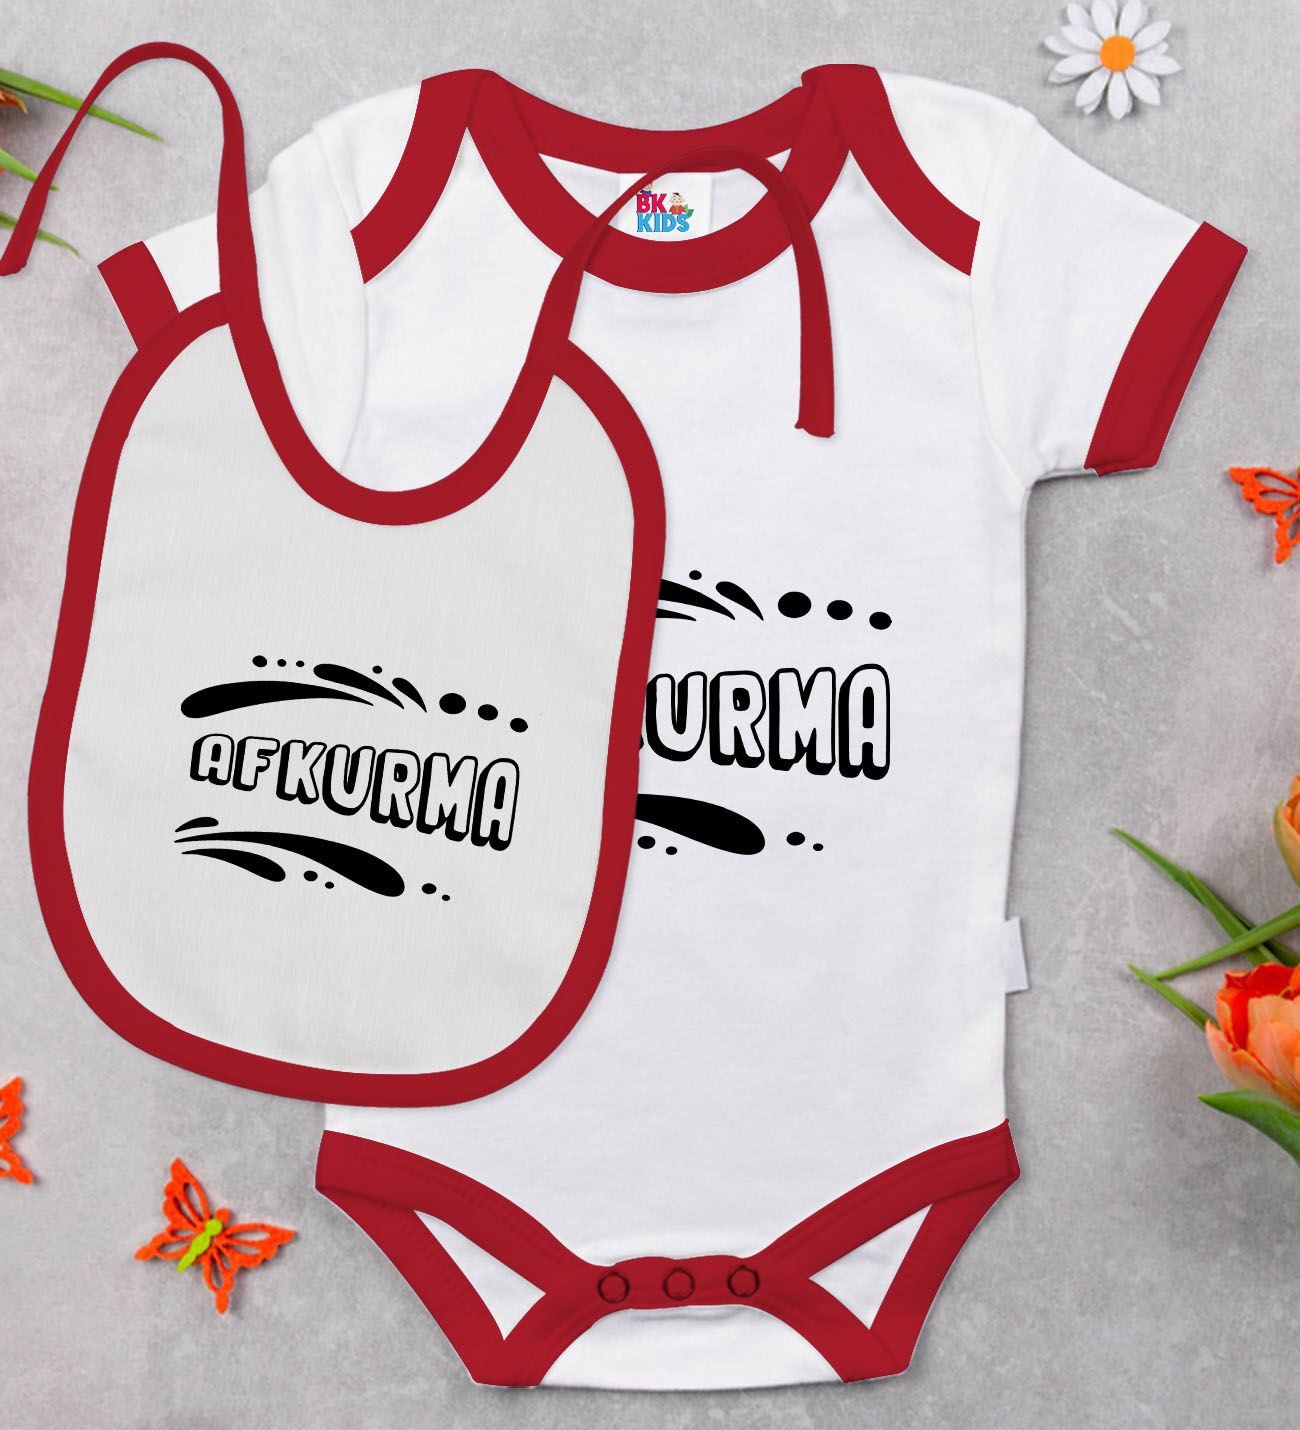 BK Kids Afkurma Tasarımlı Kırmızı Bebek Body Zıbın ve Mama Önlüğü Hediye Seti-1